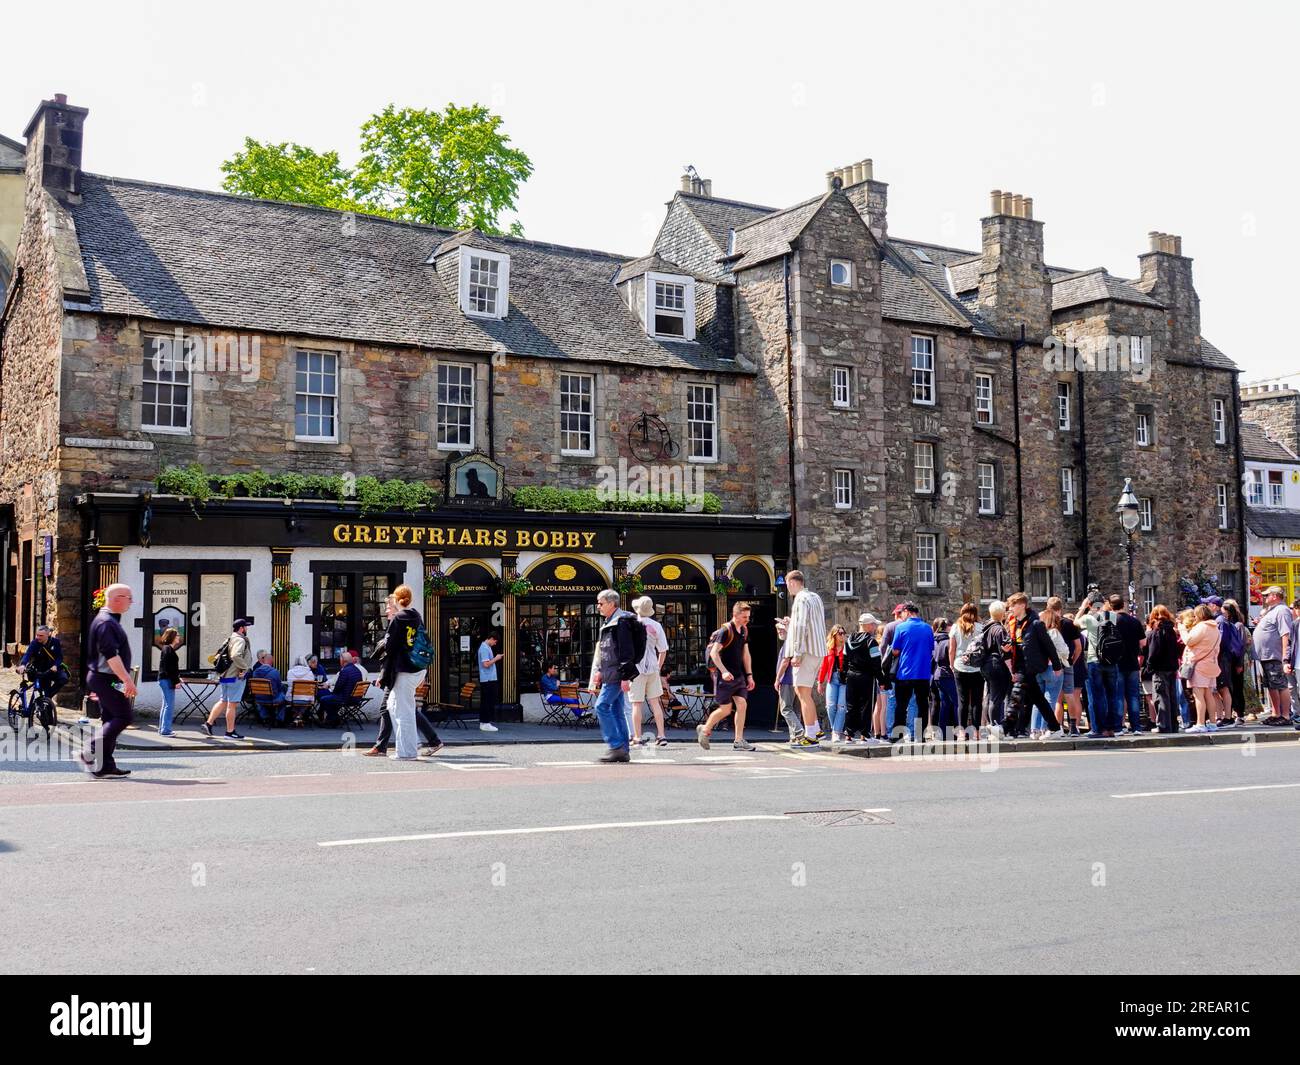 Folla di persone che aspettano sull'autobus turistico fuori dal pub Greyfriars Bobby, Old Town Edinburgh, Scotland, UK. Foto Stock